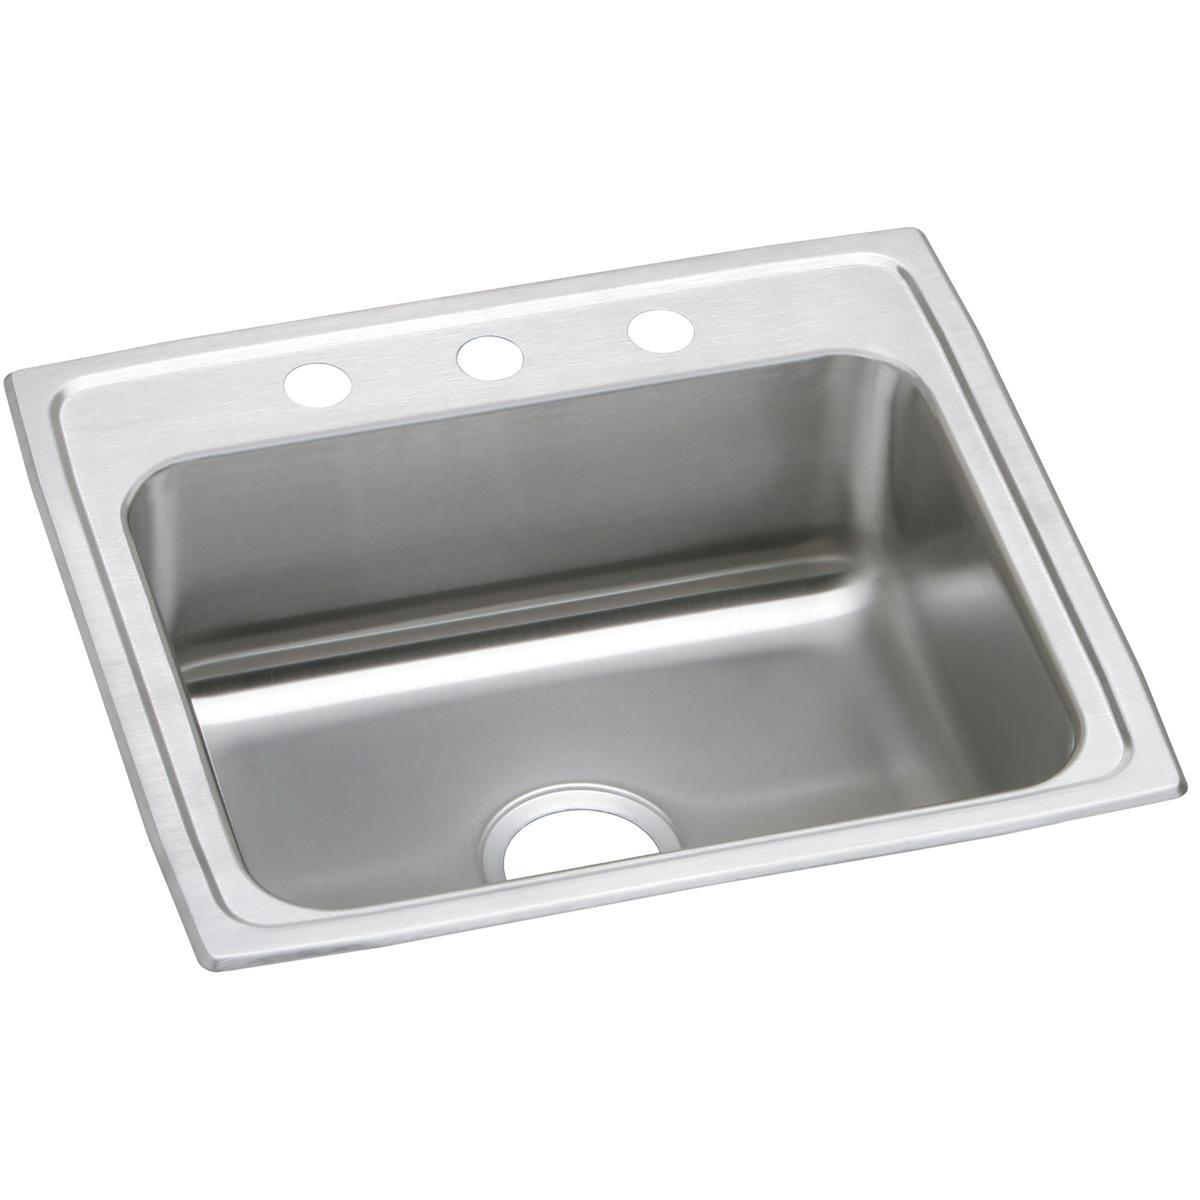 Elkay Stainless Steel Single Bowl Drop-in Sink 23628